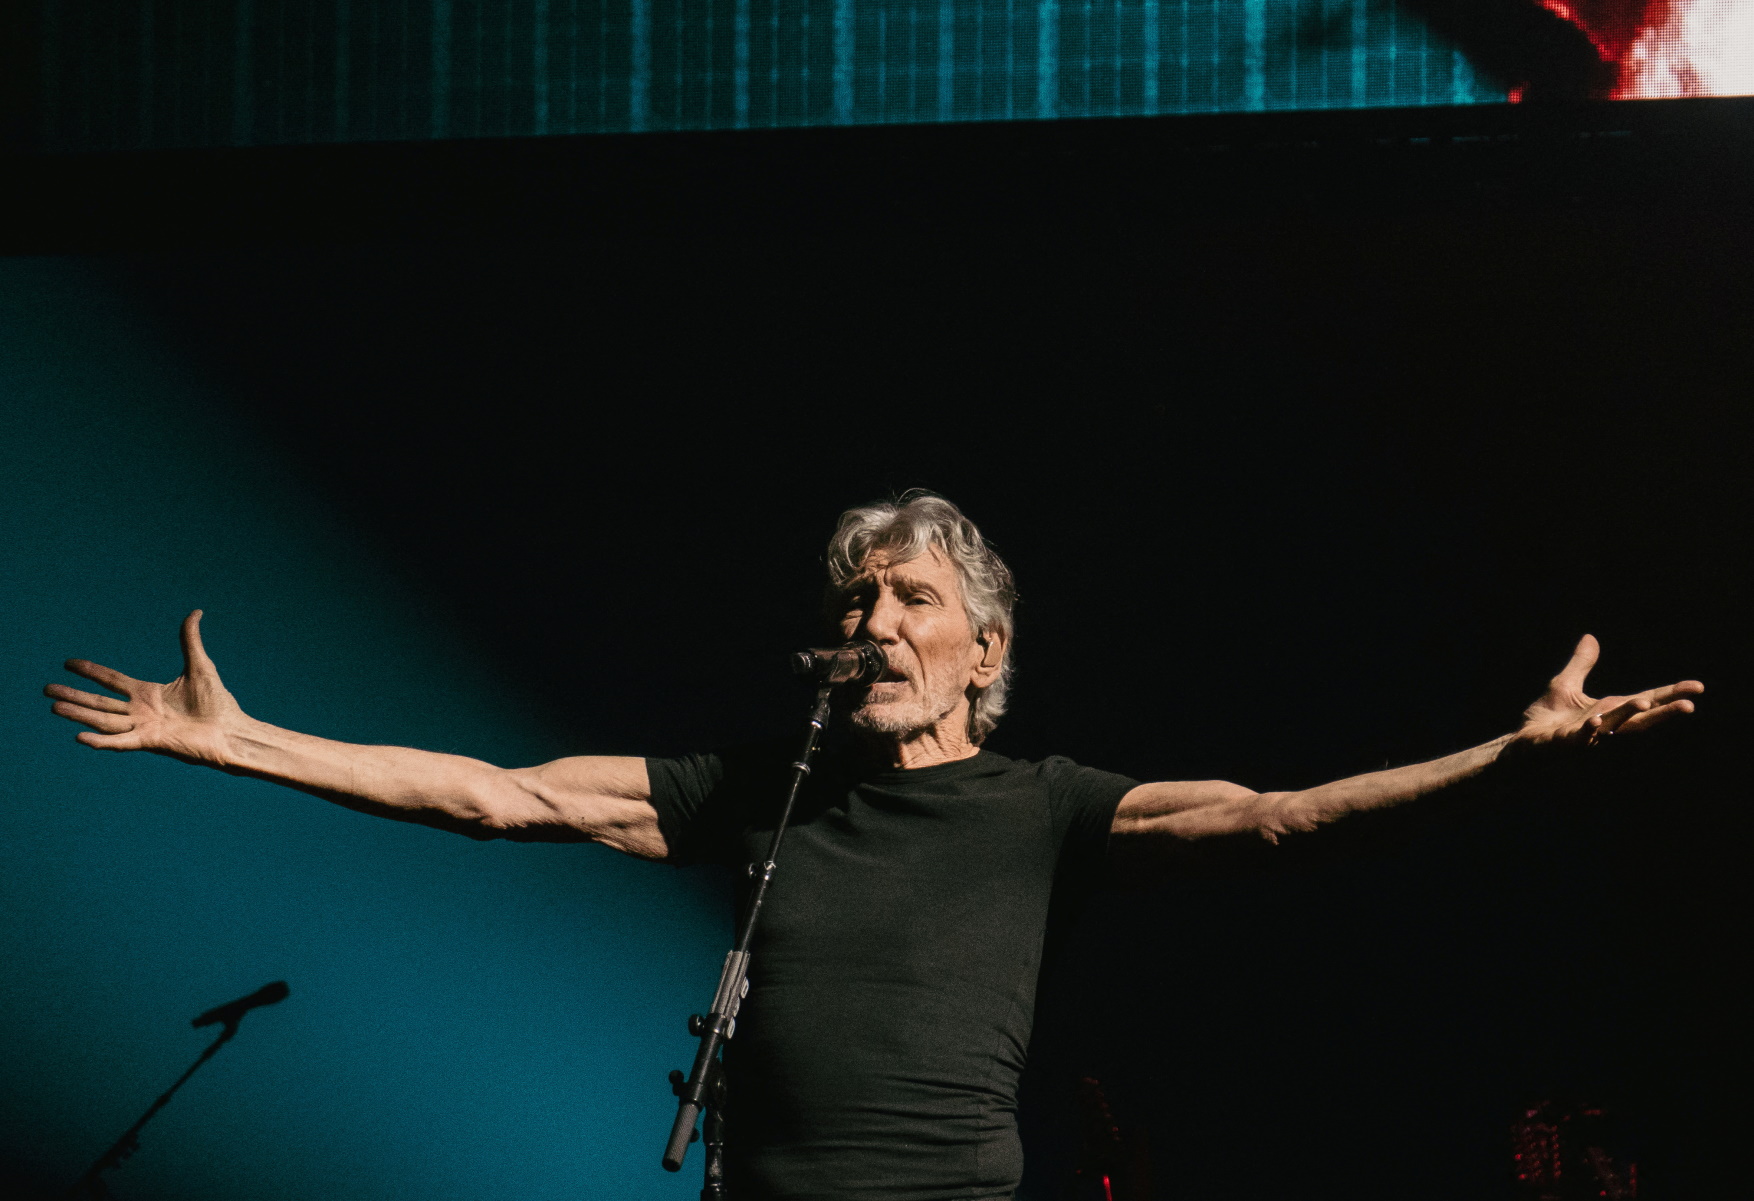 Ρότζερς Γουότερς: Οι Πολωνοί ακύρωσαν συναυλίες του συνιδρυτή των Pink Floyd επειδή υποστήριξε τον Πούτιν